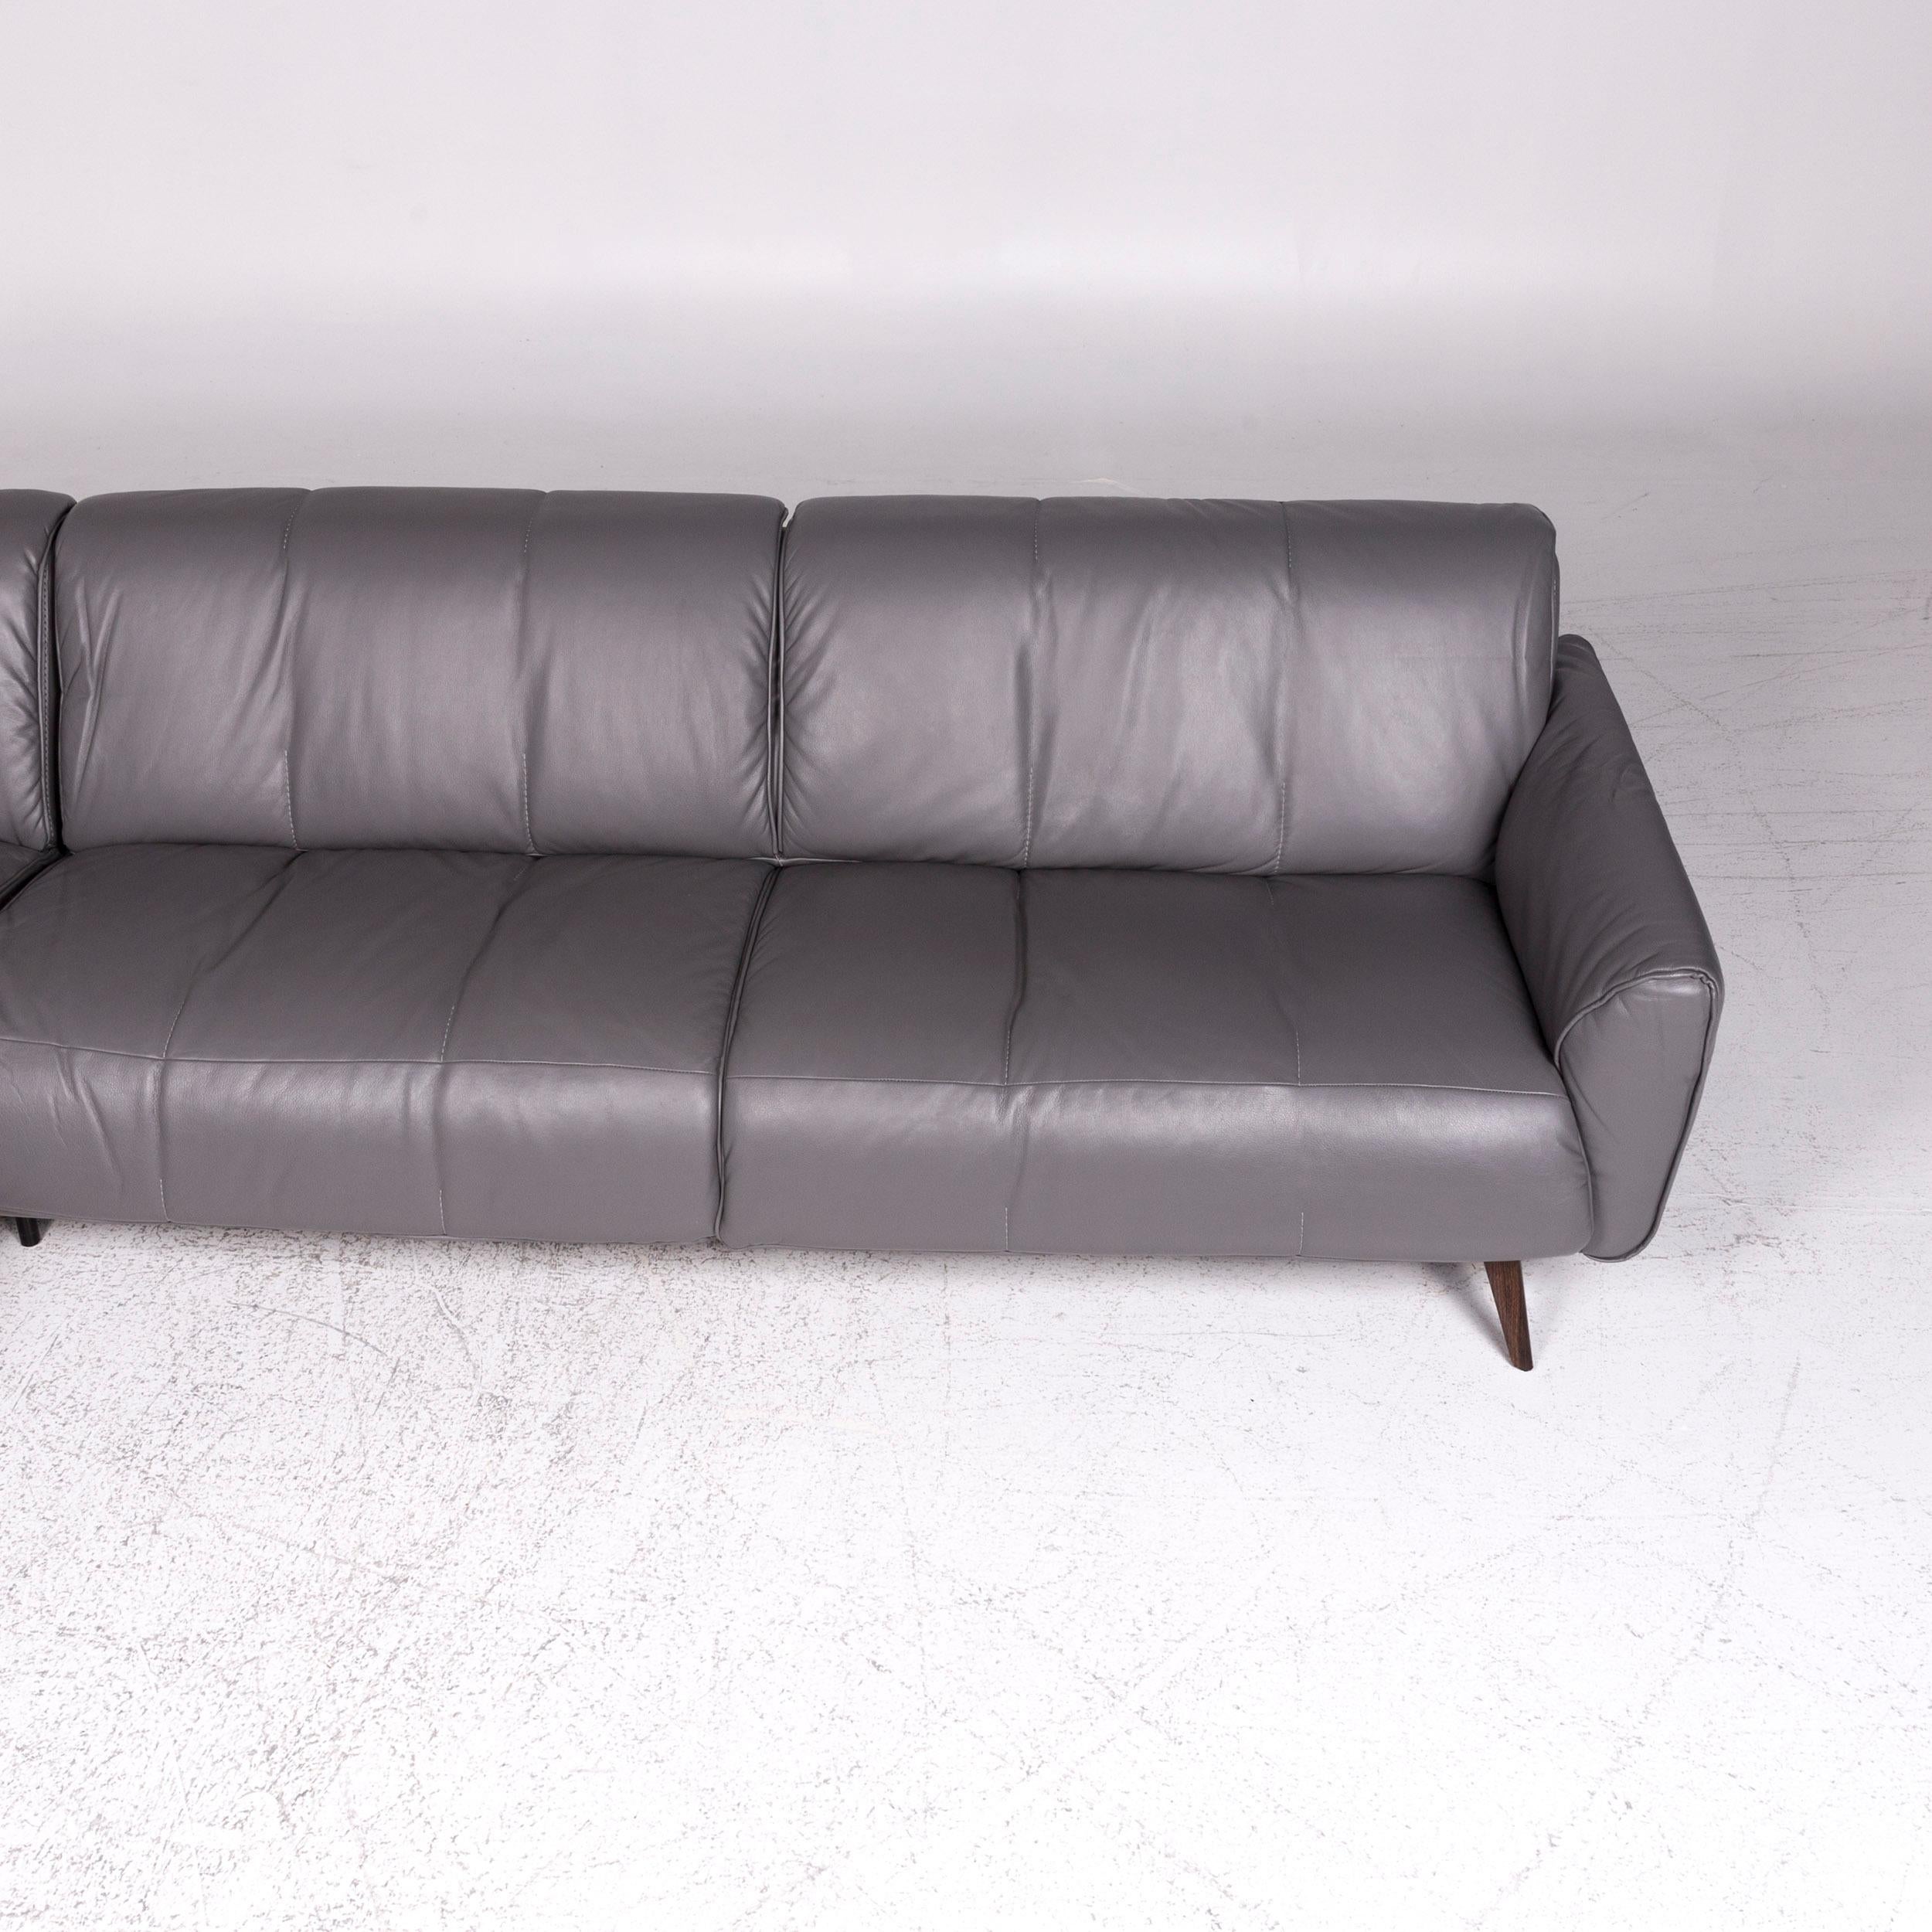 Contemporary Natuzzi Editions Talento Designer Leather Corner Sofa Gray Sofa Couch